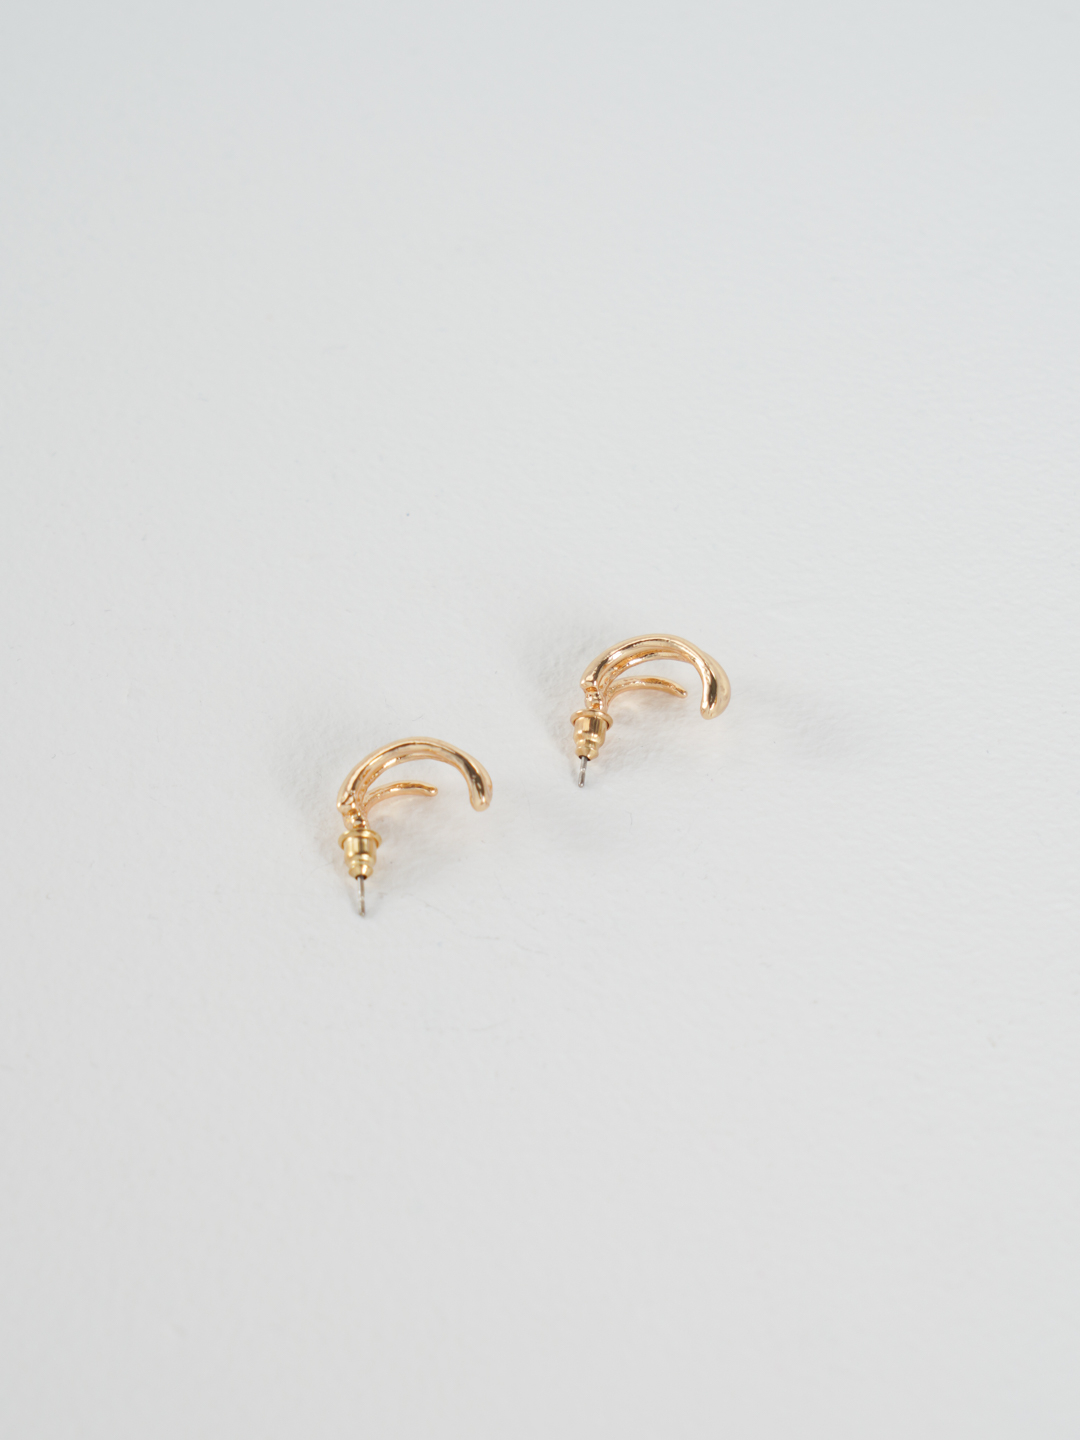 Серьги "Золото" в стиле минимализм, сережки женские, серьга для девушек купить по цене 49 ₽ в интернет-магазине KazanExpress